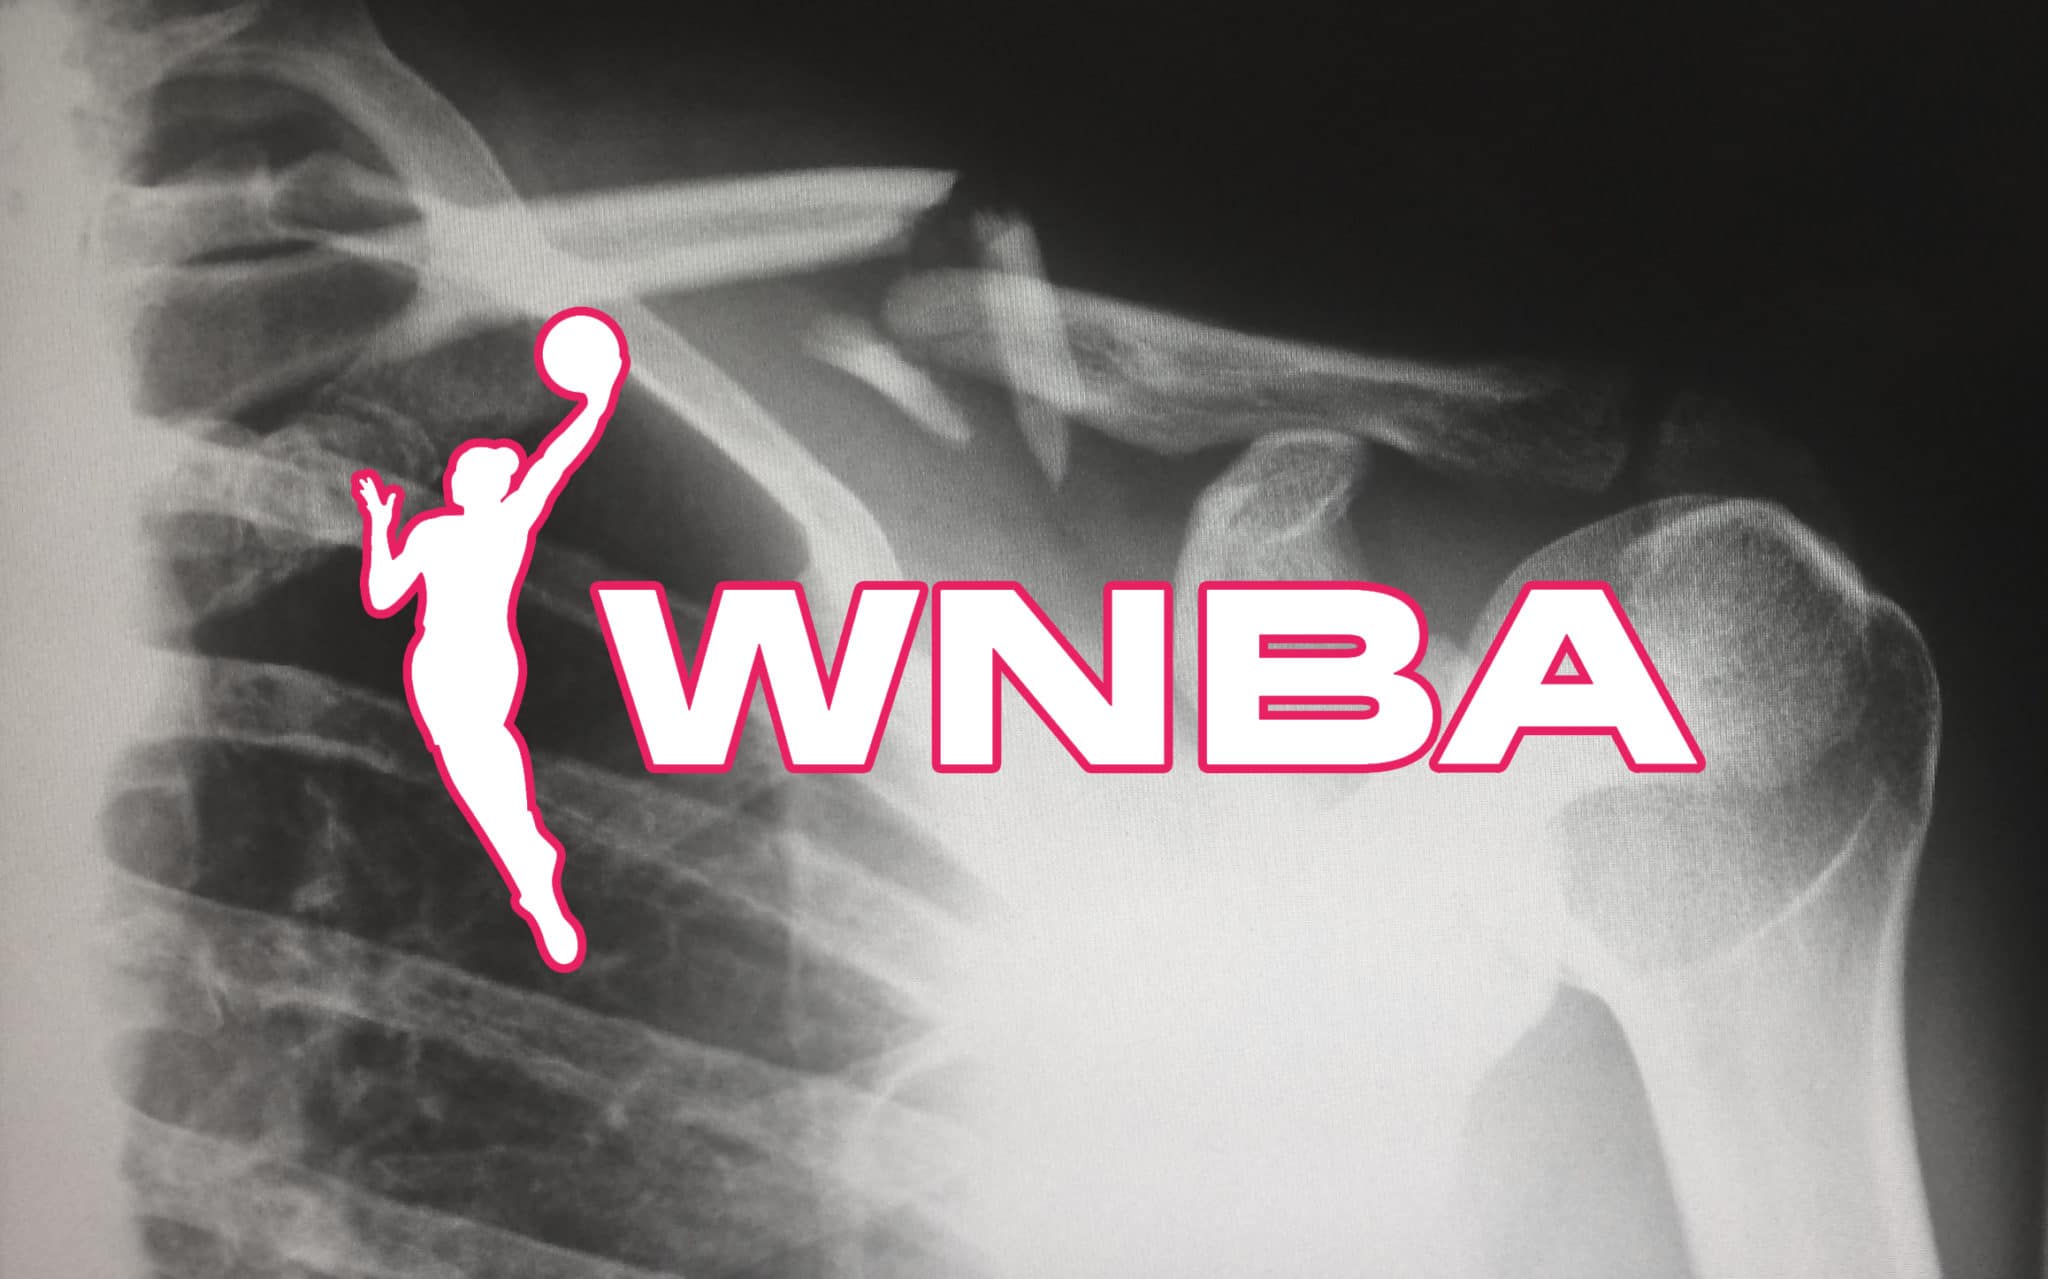 Dossier : les blessures en WNBA